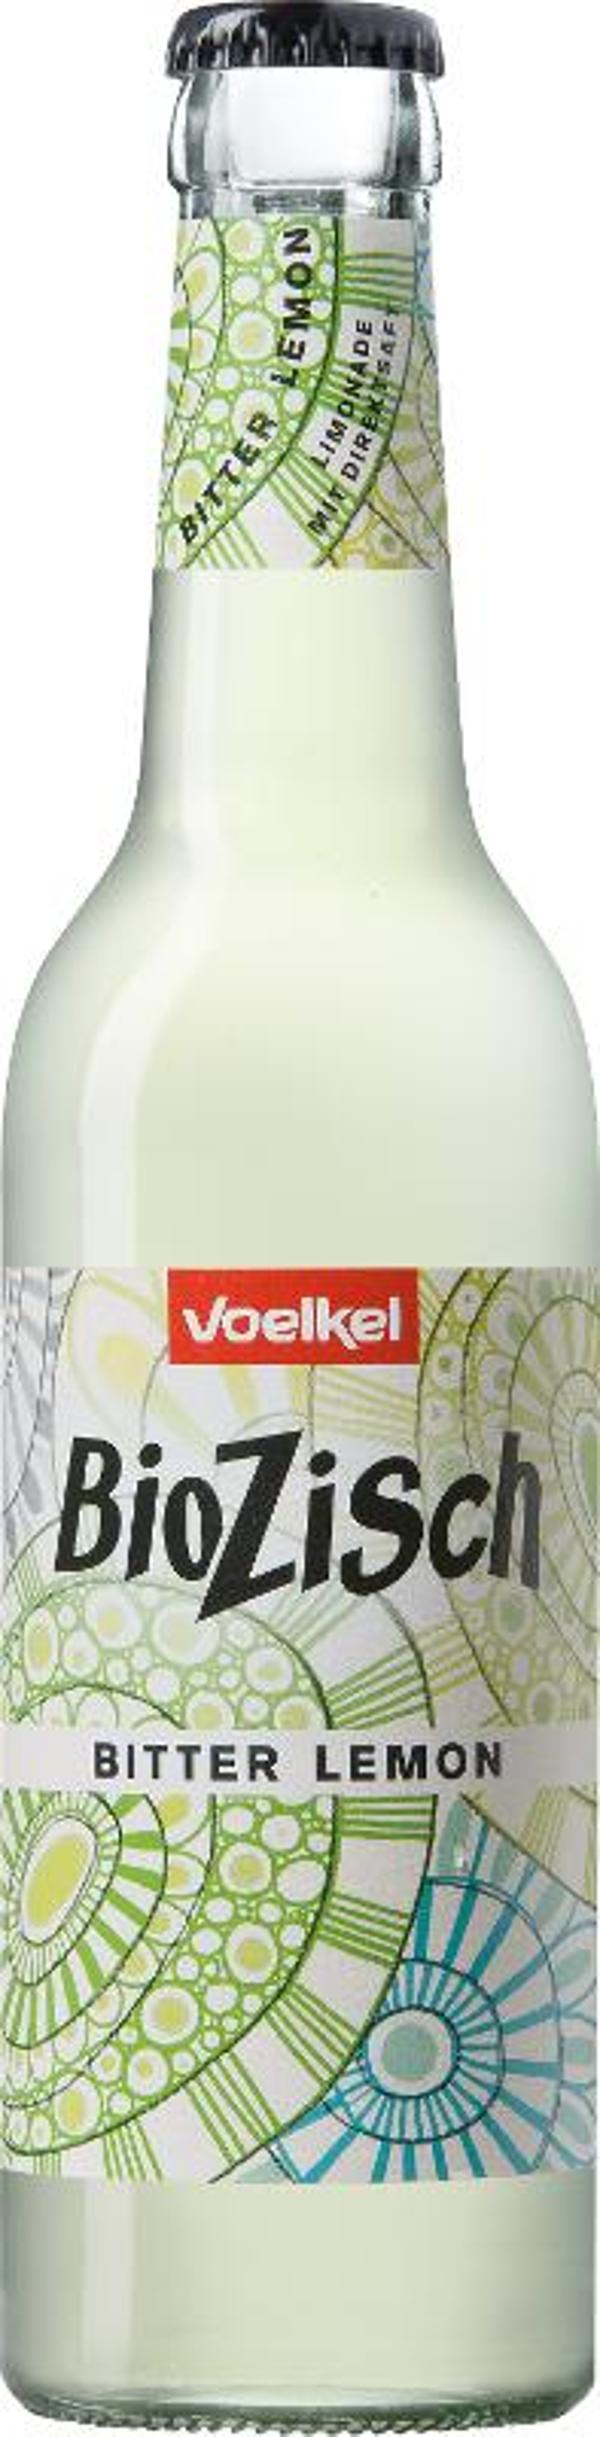 Produktfoto zu VPE BioZisch Bitter Lemon 12x0,33 l Voelkel